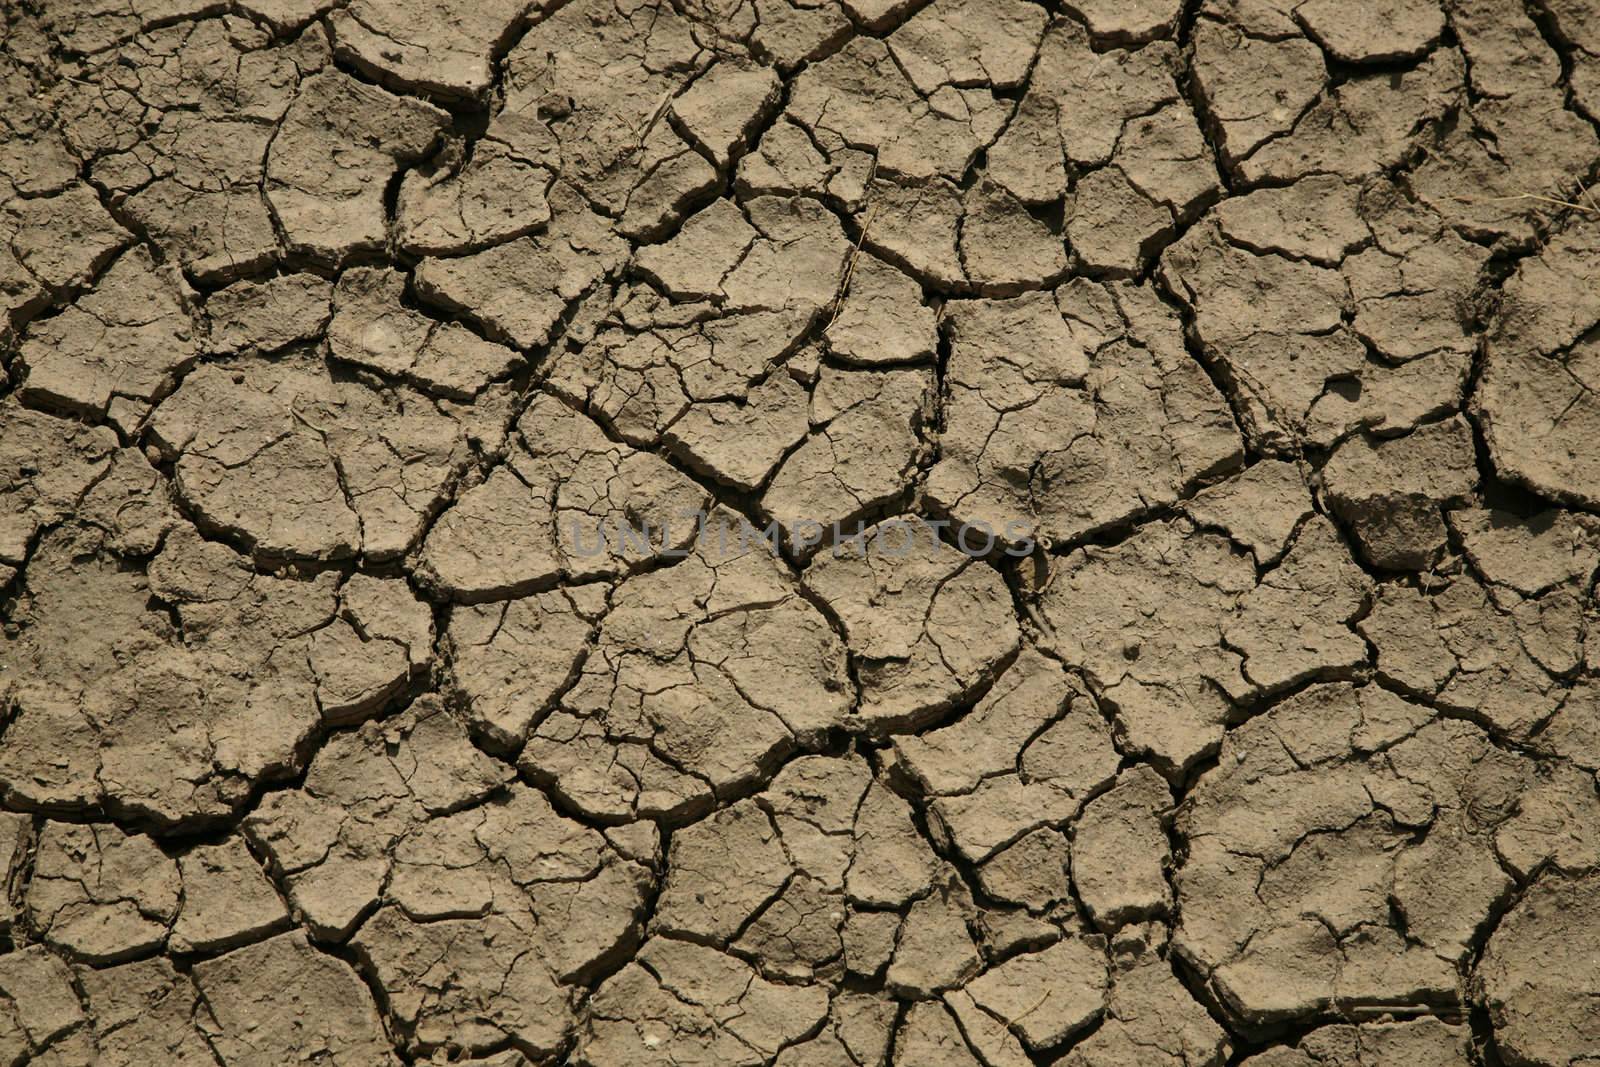 detail of dry broken soil in a desert